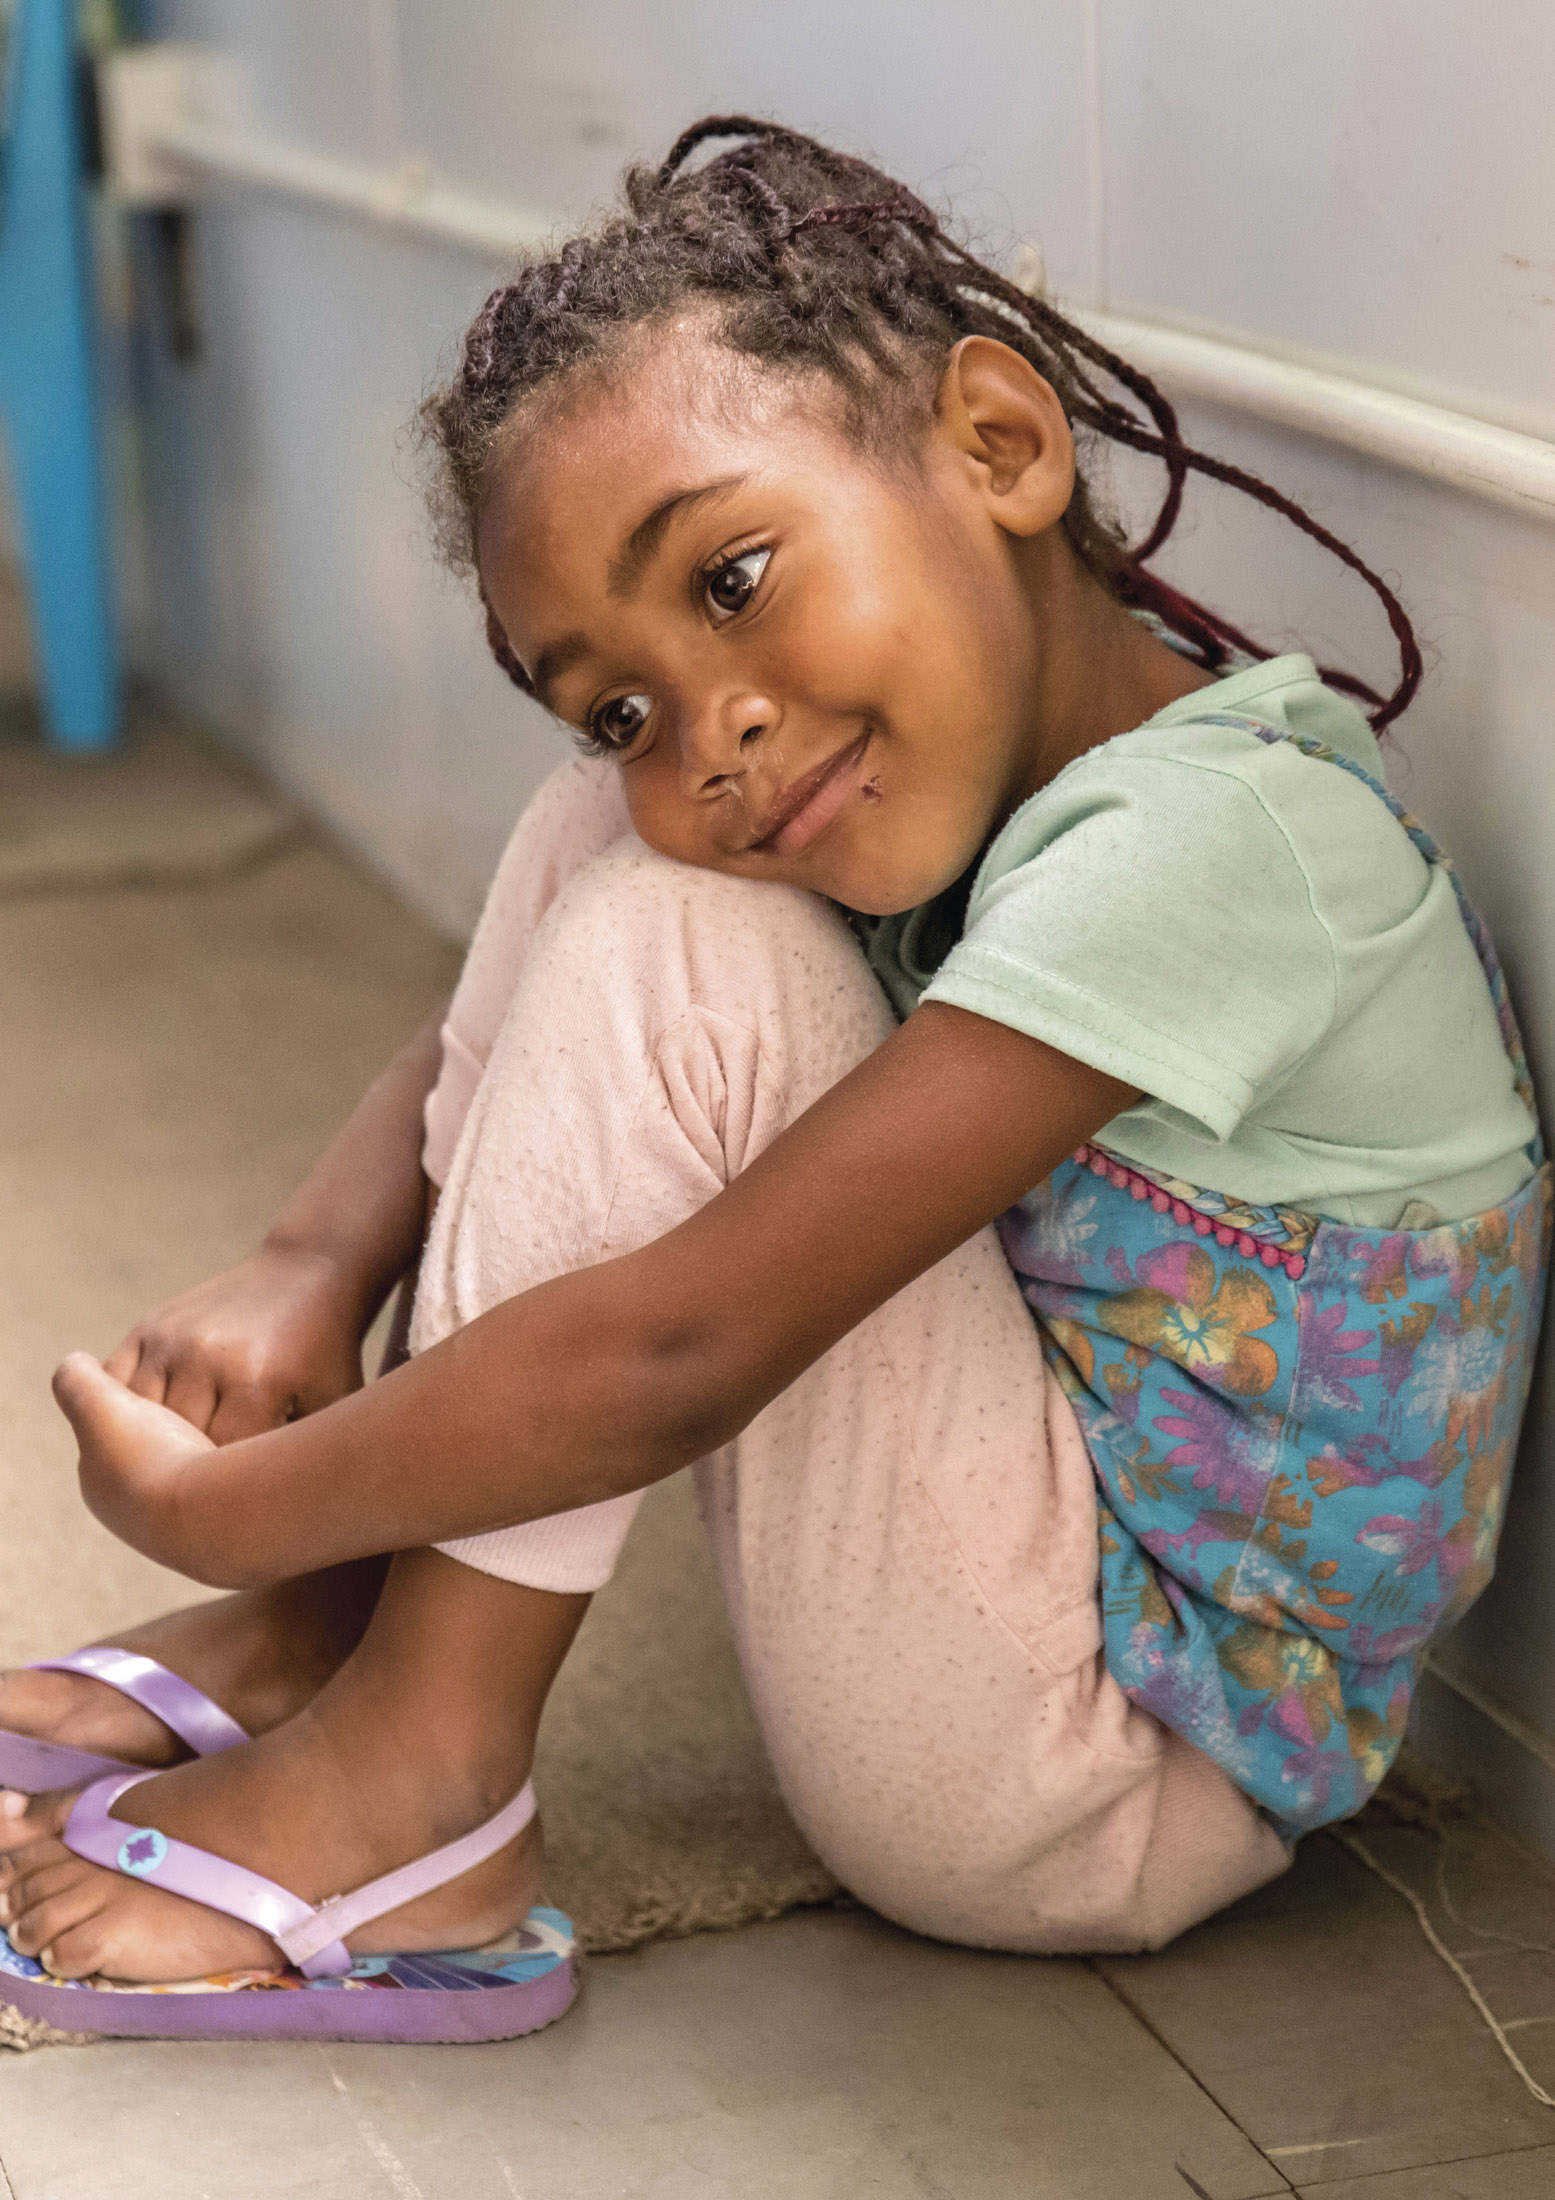 Ein junges Mädchen mit geflochtenen Haaren sitzt mit angezogenen Beinen auf dem Boden, lehnt an einer Wand, trägt ein pastellfarbenes T-Shirt und einen gemusterten Rucksack und blickt nachdenklich weg. © Fotografie Tomas Rodriguez